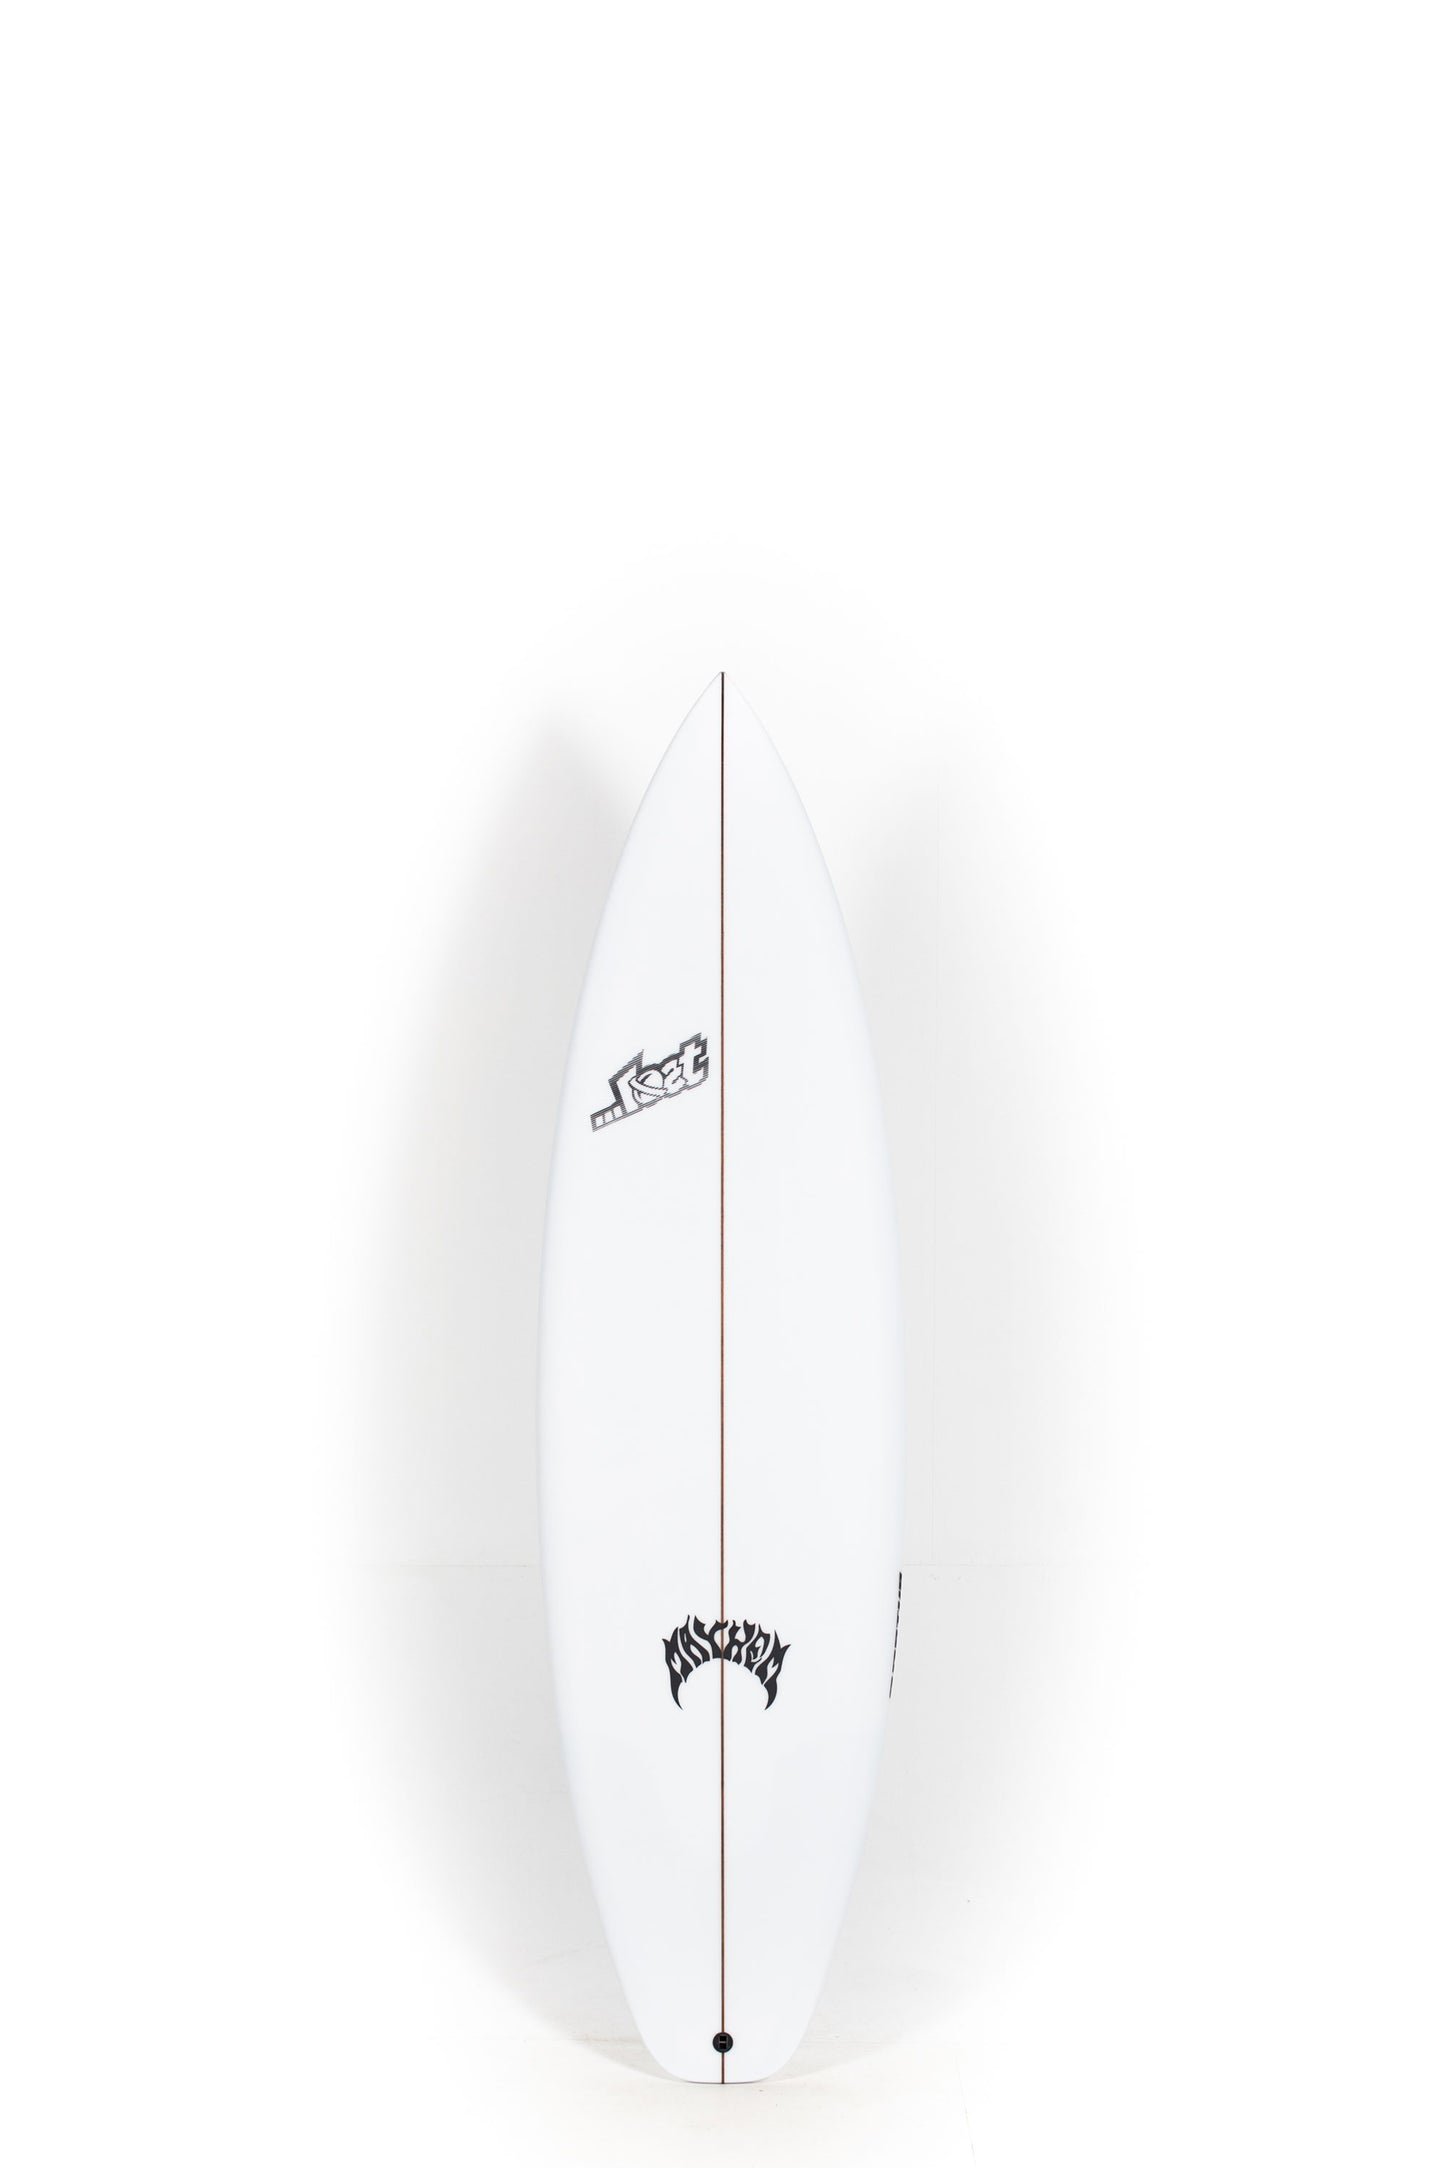 Pukas Surf Shop - Lost Surfboard - 3.0_STUB DRIVER by Matt Biolos - 6’2” x 19.88" x 2.53" - 33L - MH17582